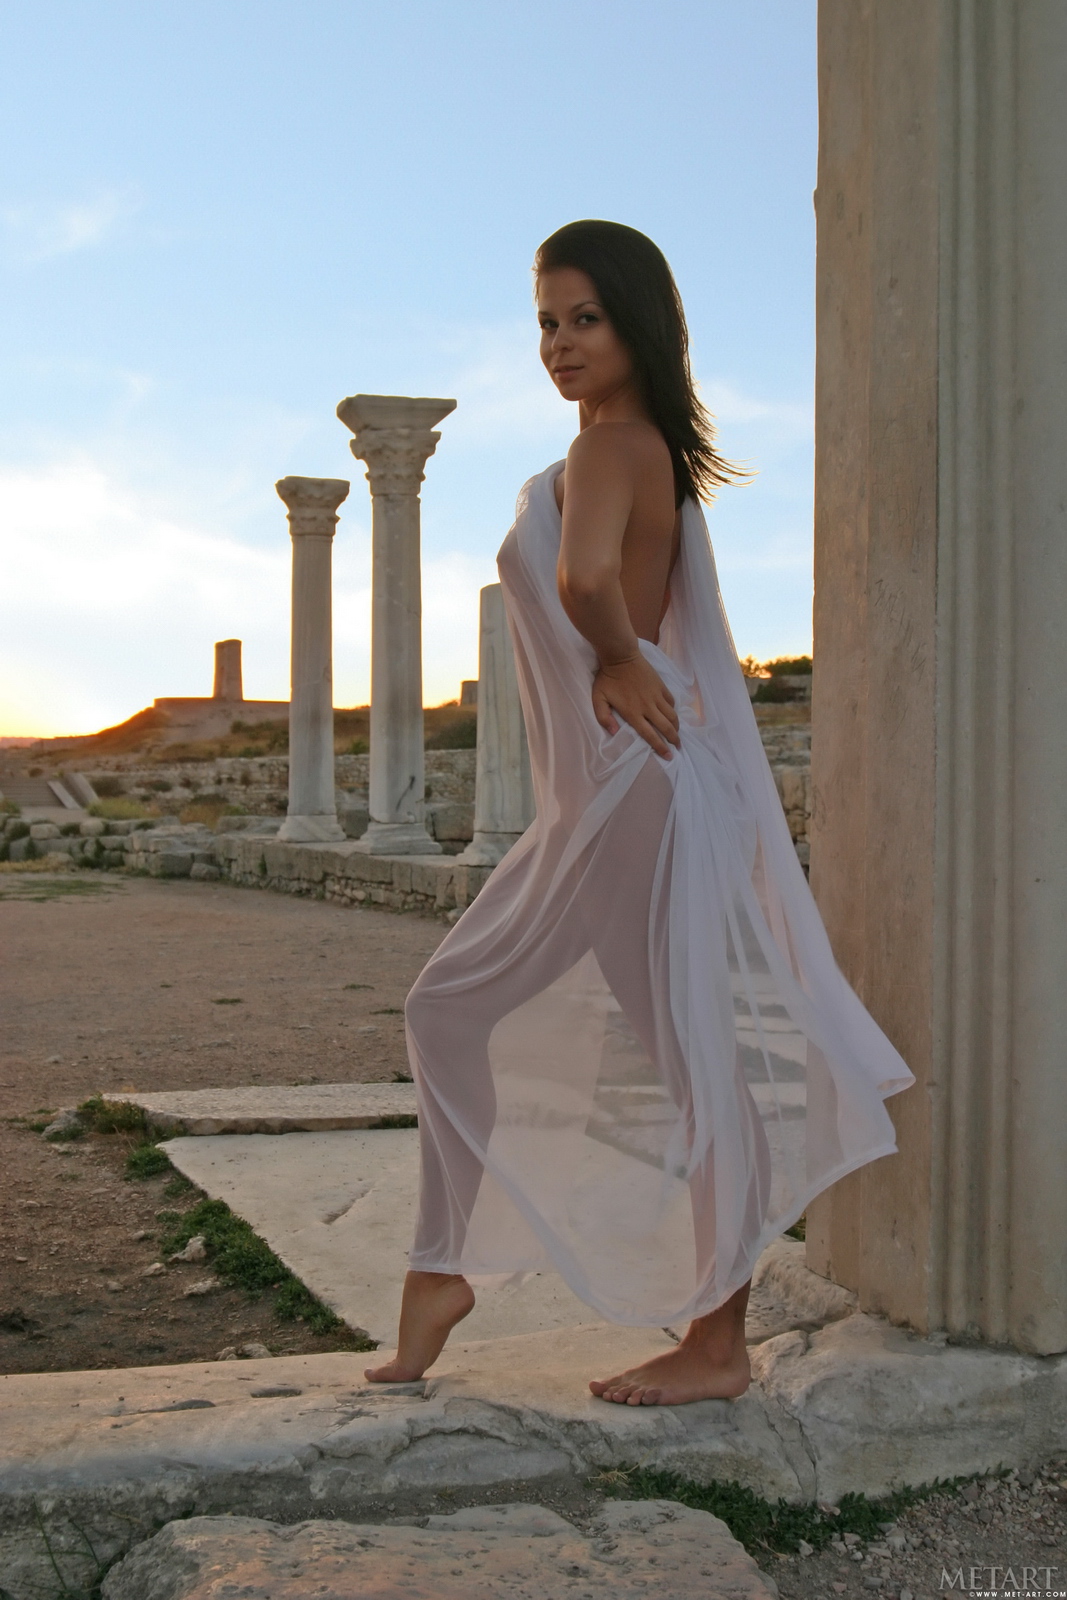 tina-d-nude-greek-columns-sunset-metart-04